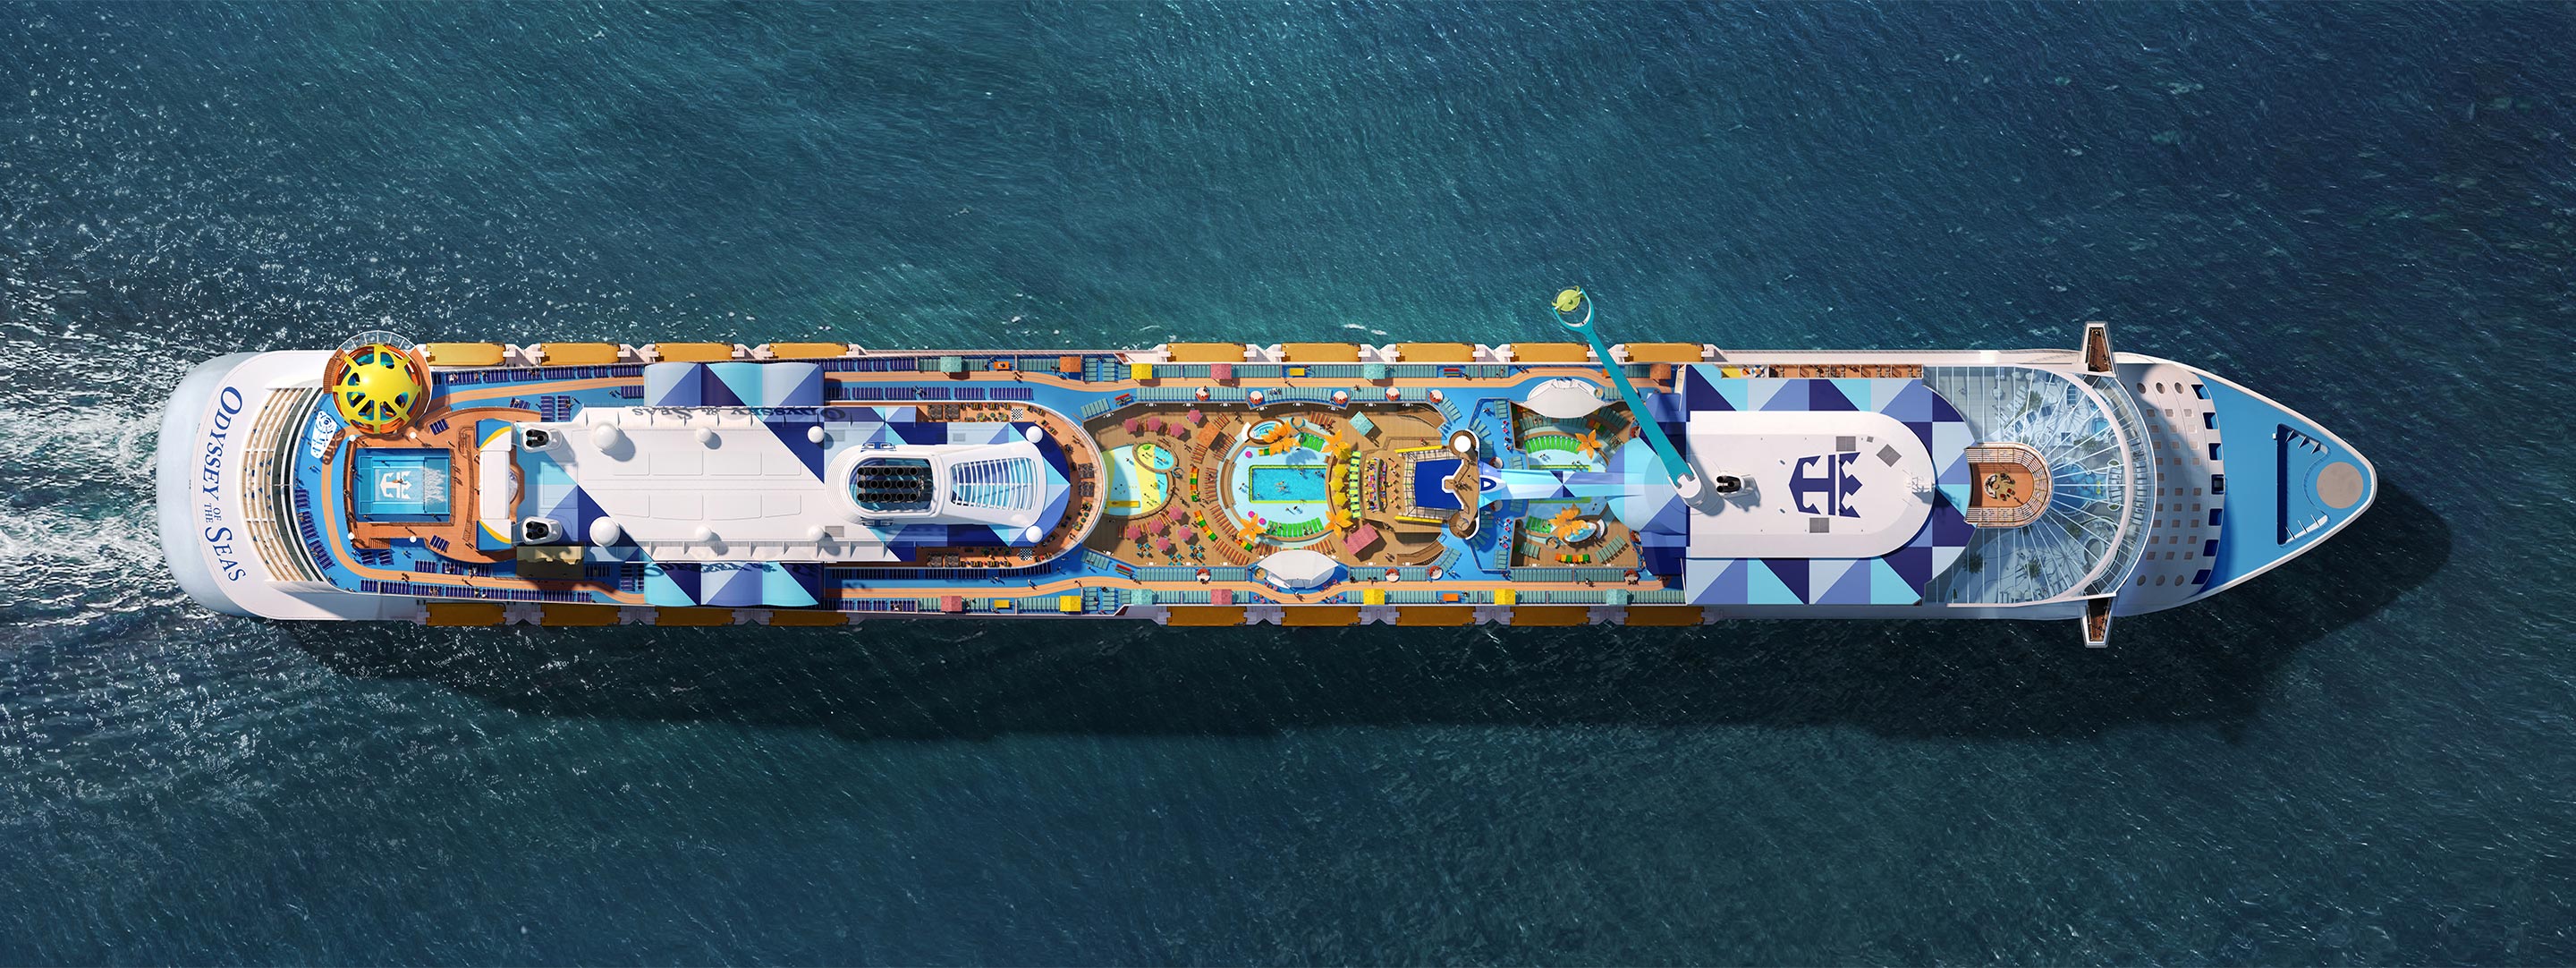 Royal Caribbean presenta al nuevo “Odyssey of the Seas” Cruceros